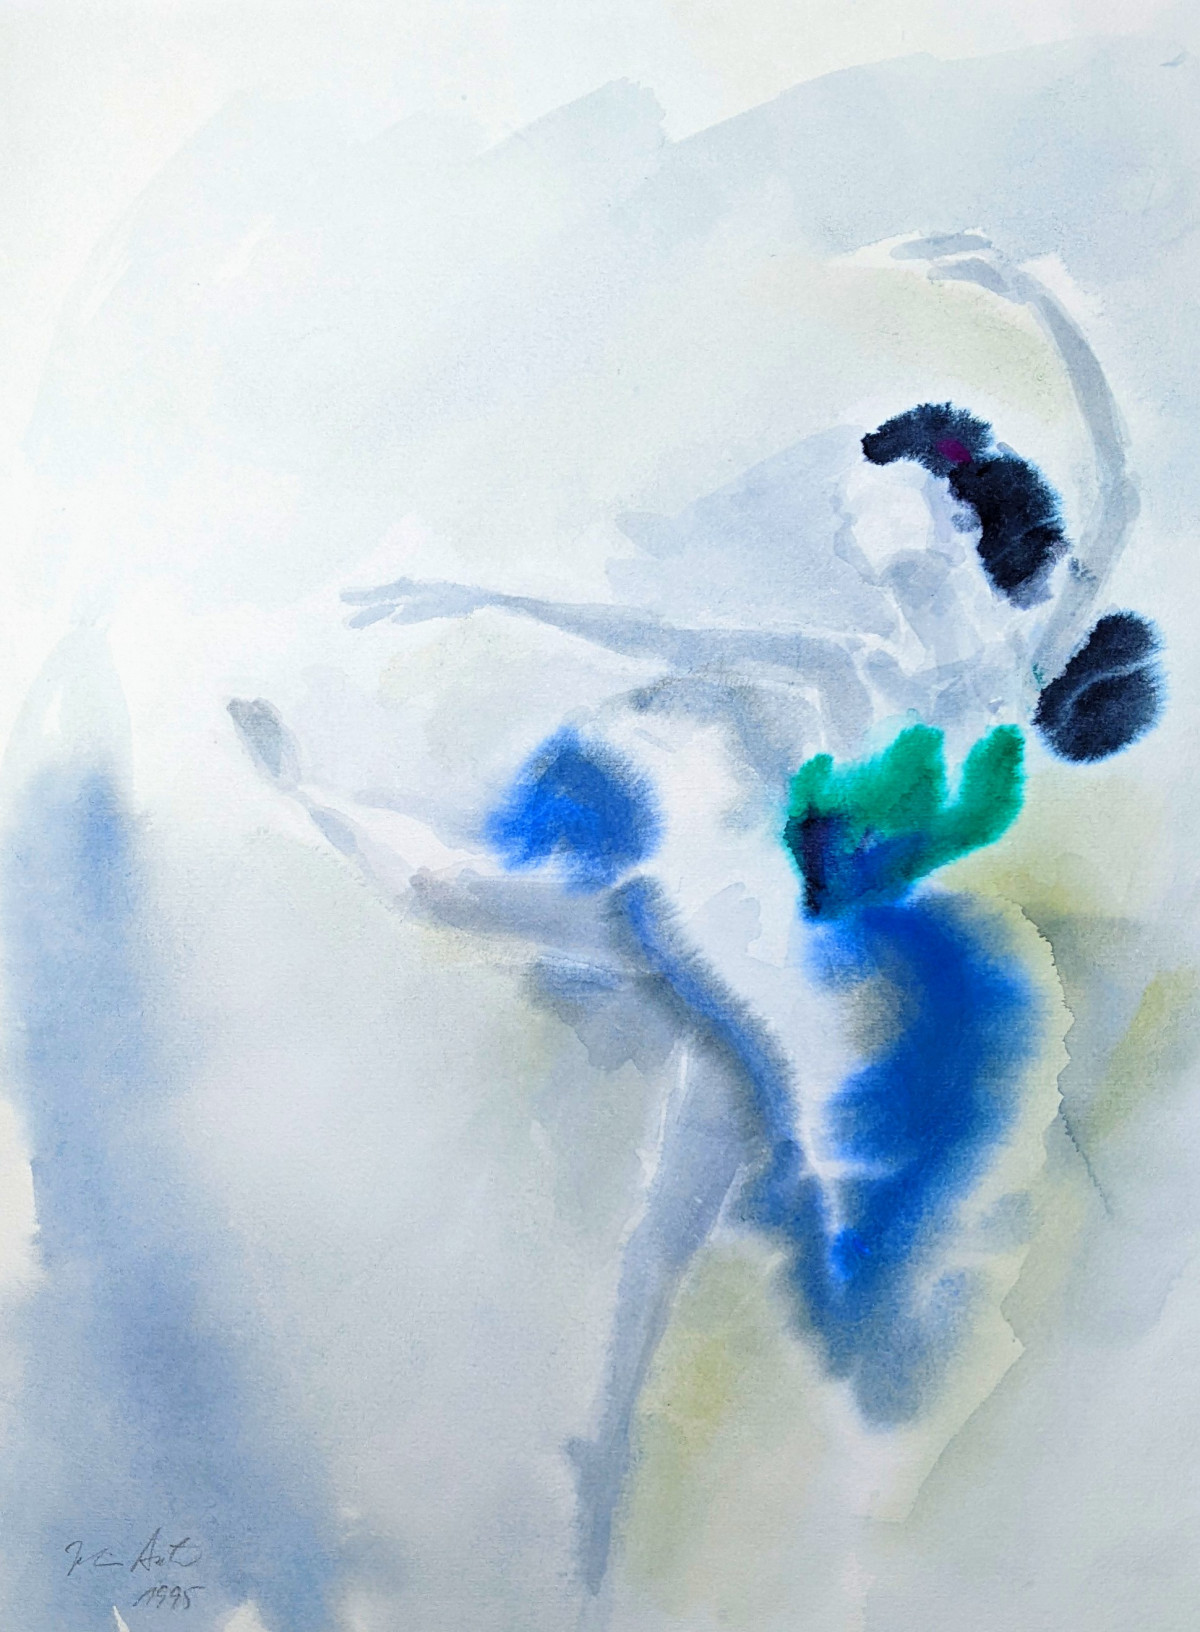 Tänzerin in Grün und Blau Attitudefigur, Aquarell, 1995